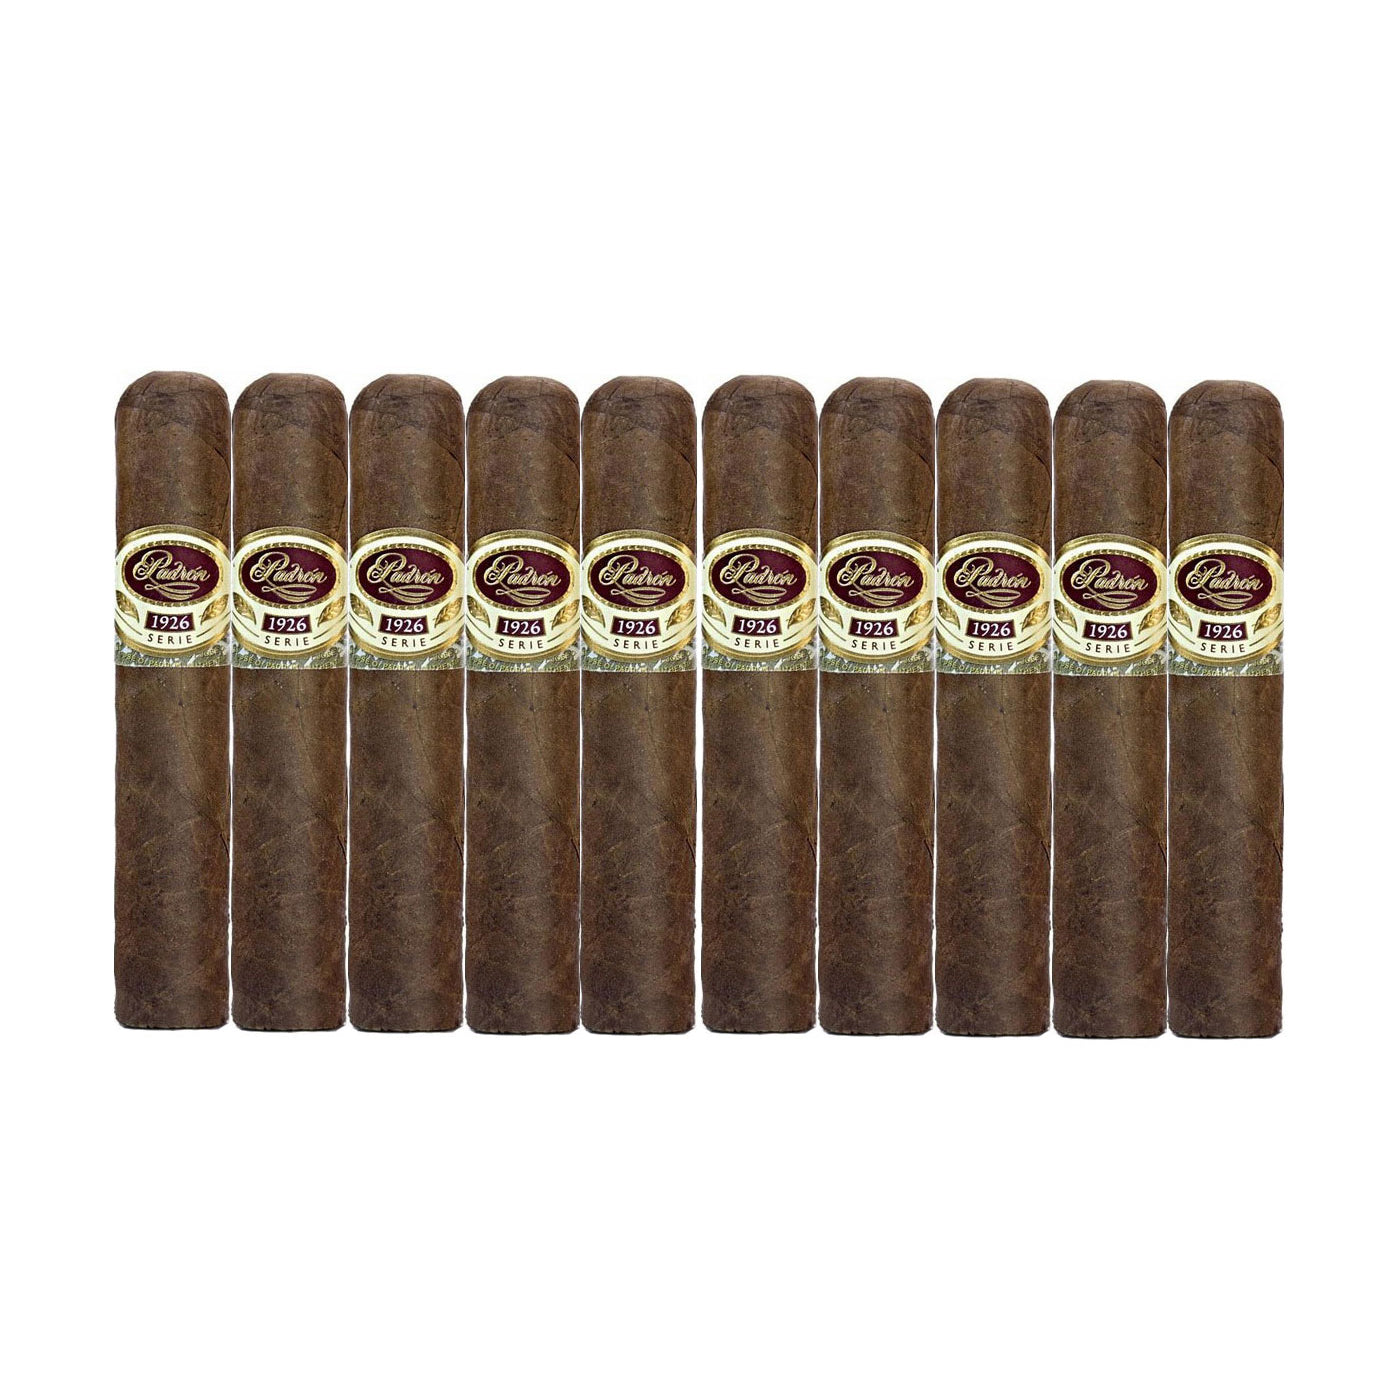 Padron 1926 No.35 Natural 4 x 48 Cigars 10 Pack